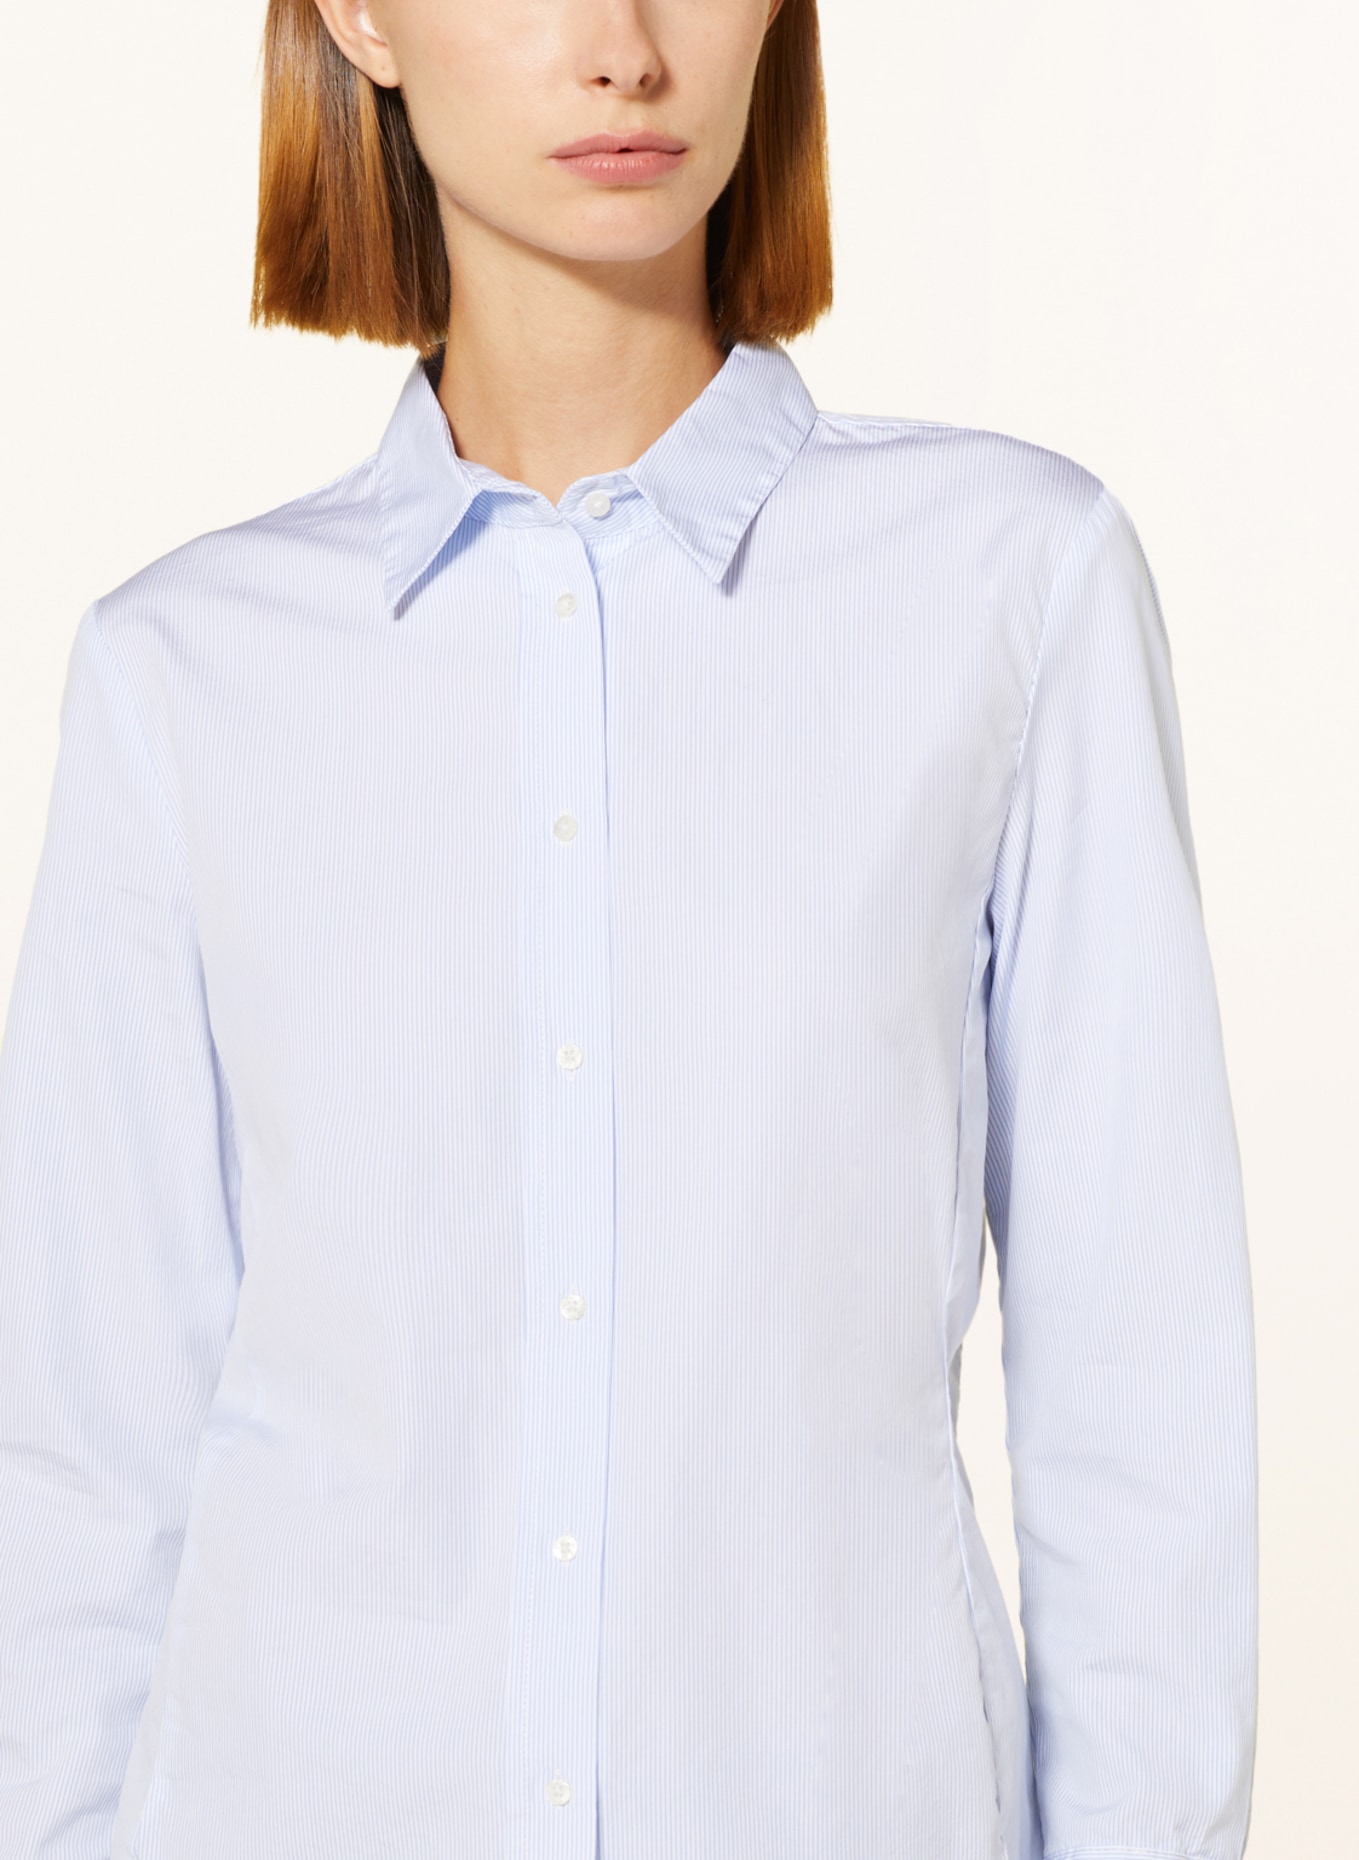 TONNO & PANNA Shirt blouse ELISABETH, Color: WHITE/ LIGHT BLUE (Image 4)